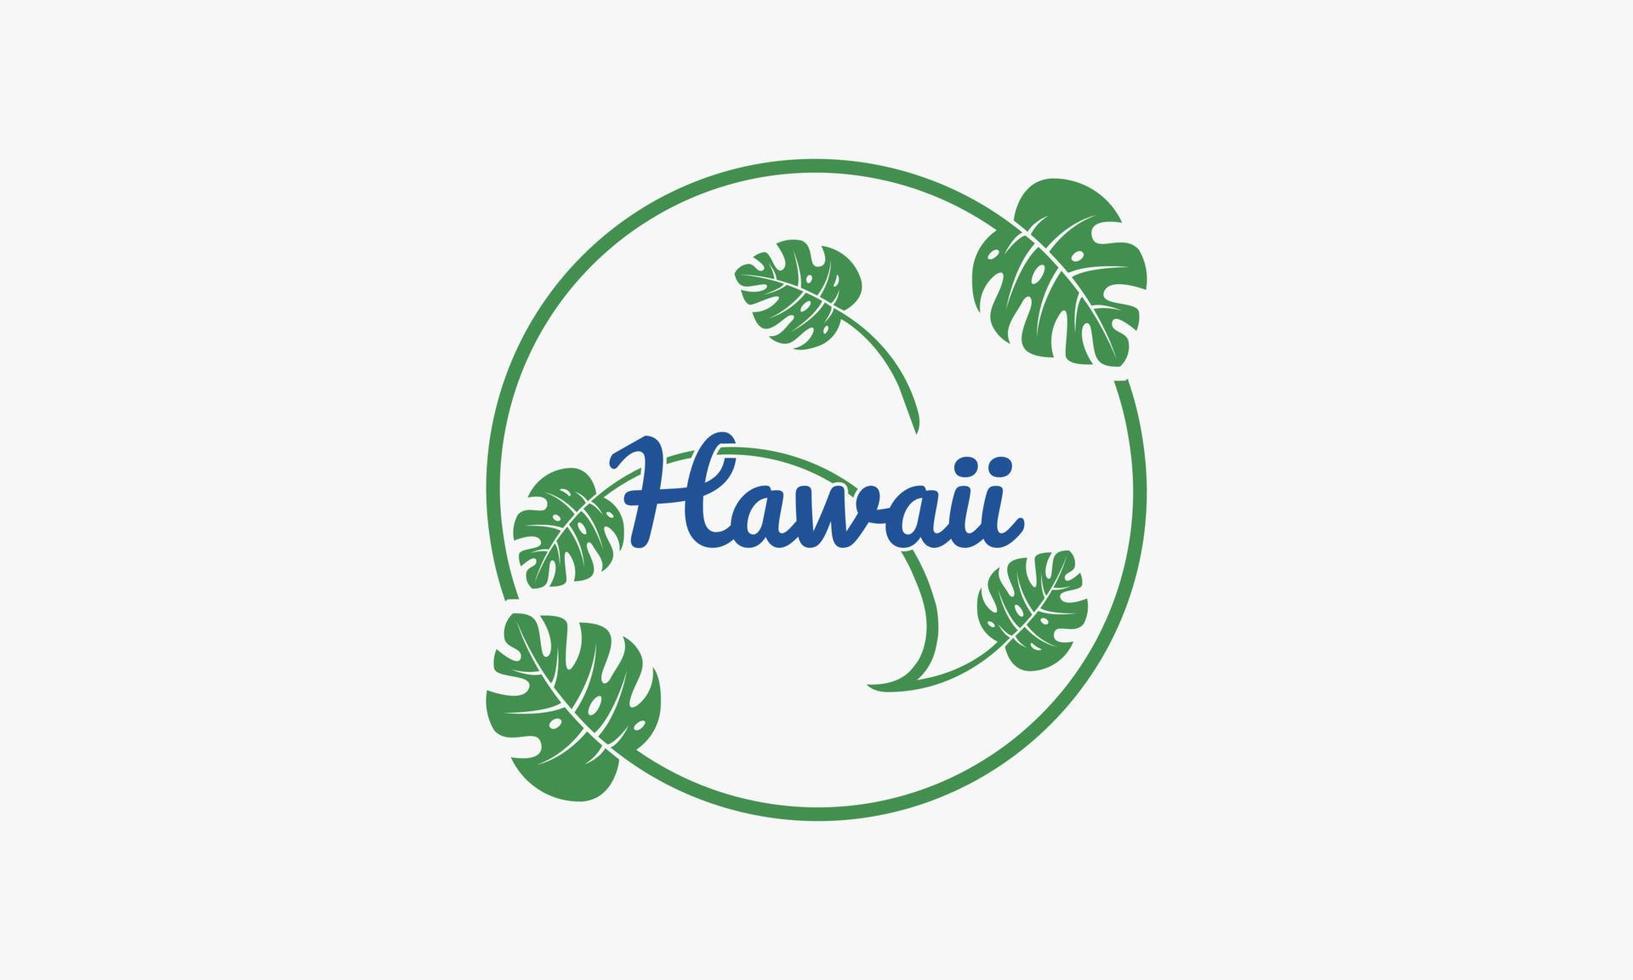 Texto de Hawaii con vector de diseño de hojas de monstera aislado sobre fondo blanco.